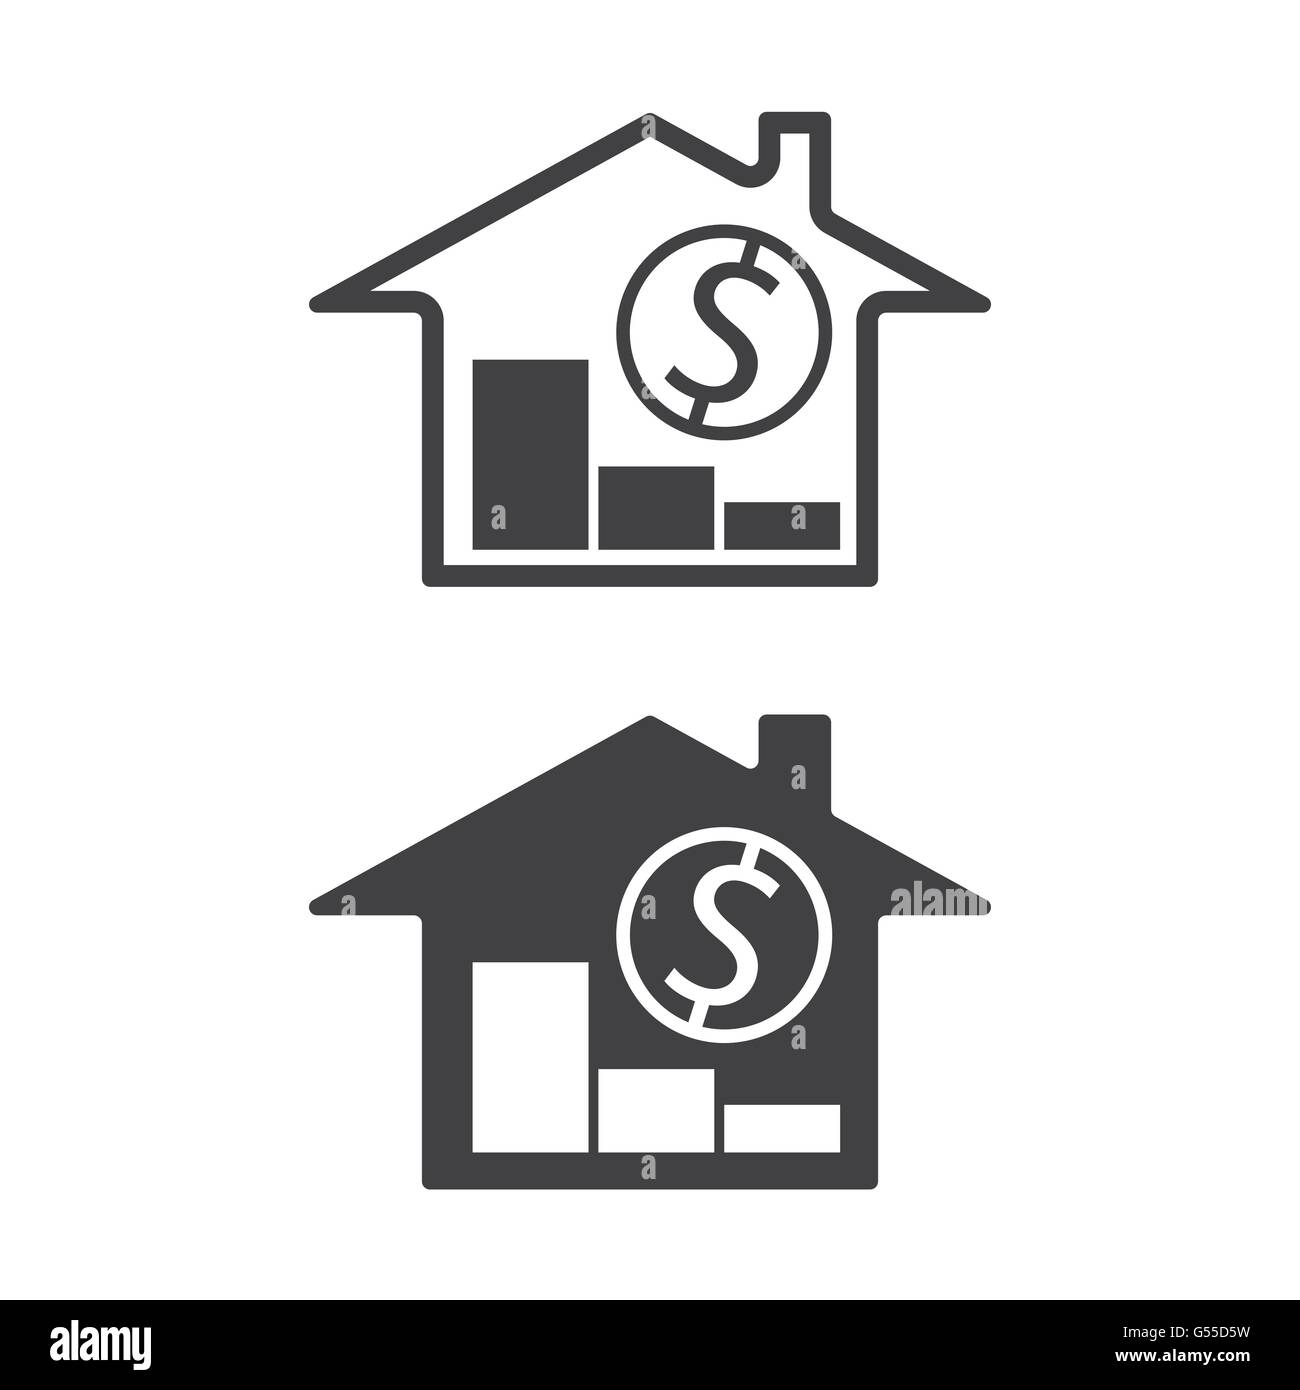 Accueil, les symboles de l'argent avec tendance vers le bas immobilier baisse de prix vector illustration Illustration de Vecteur